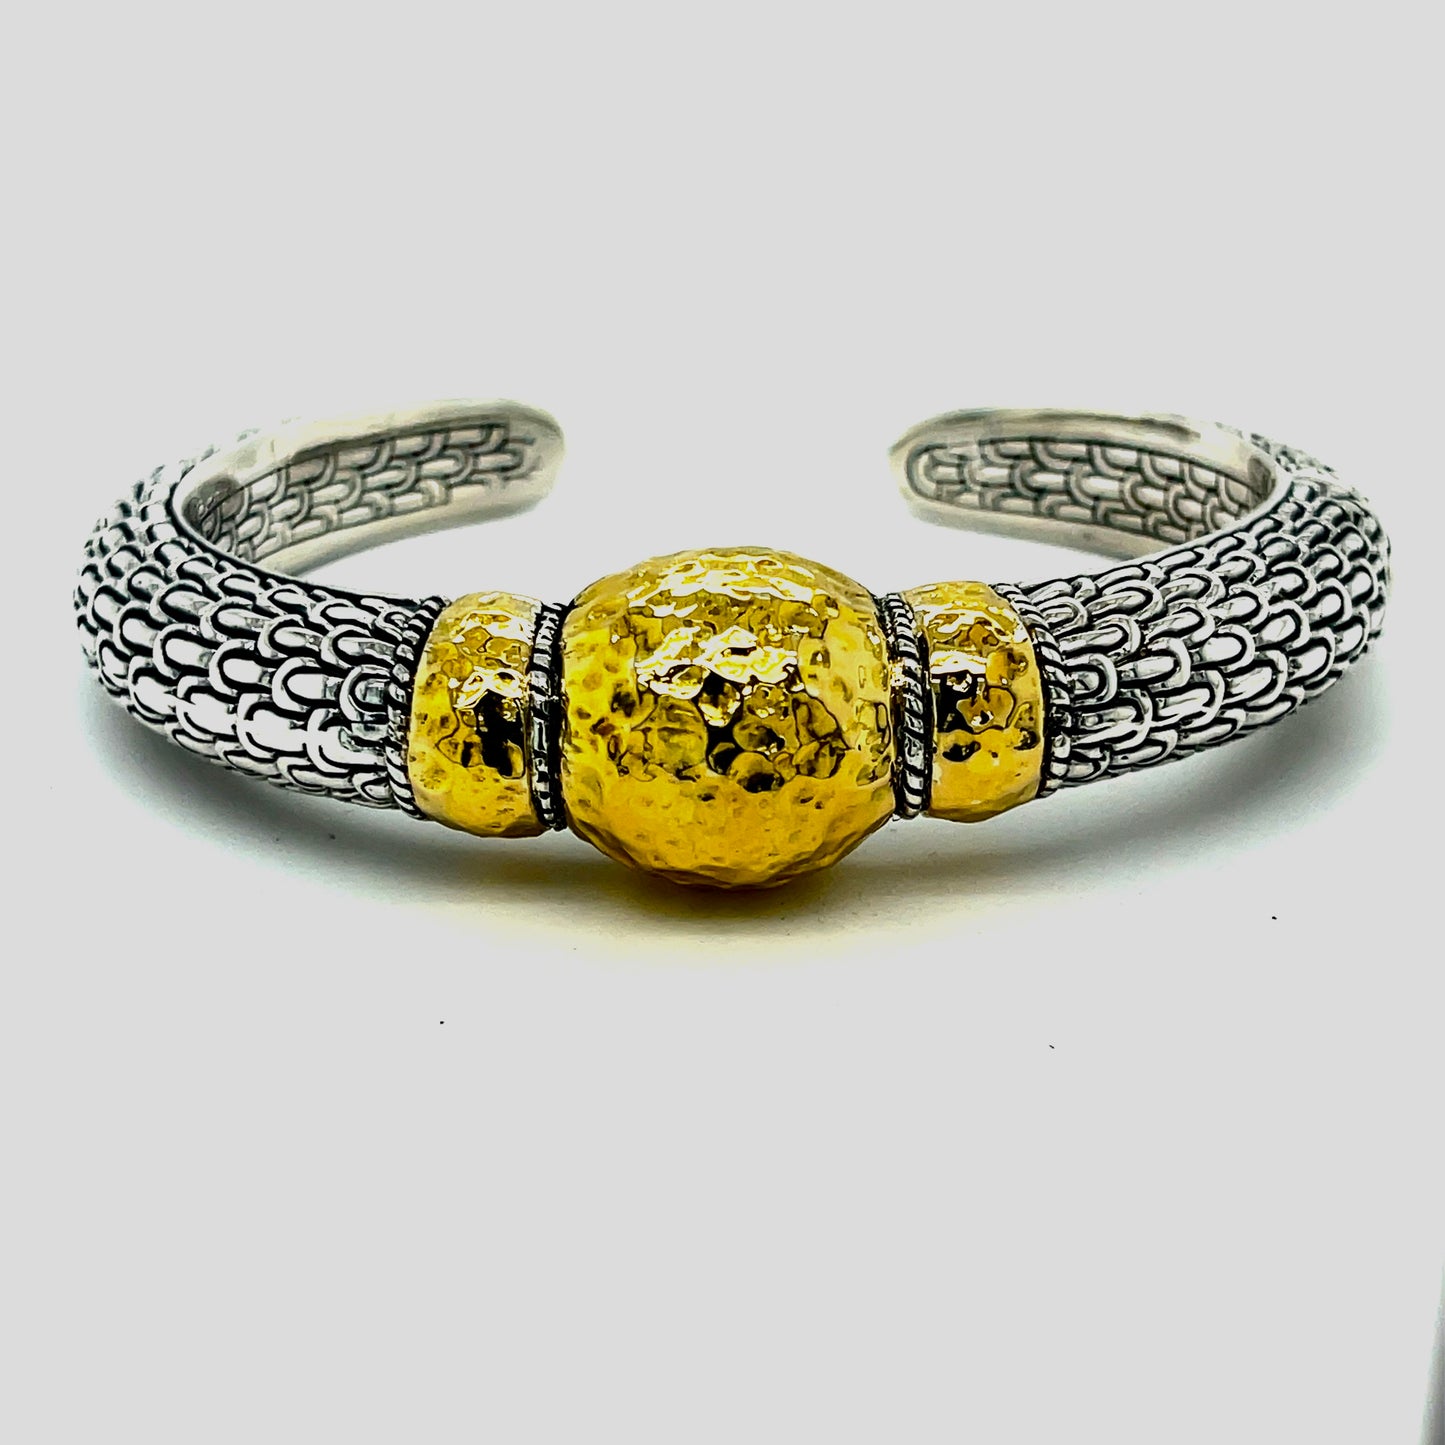 Silver gold bangled bracelet